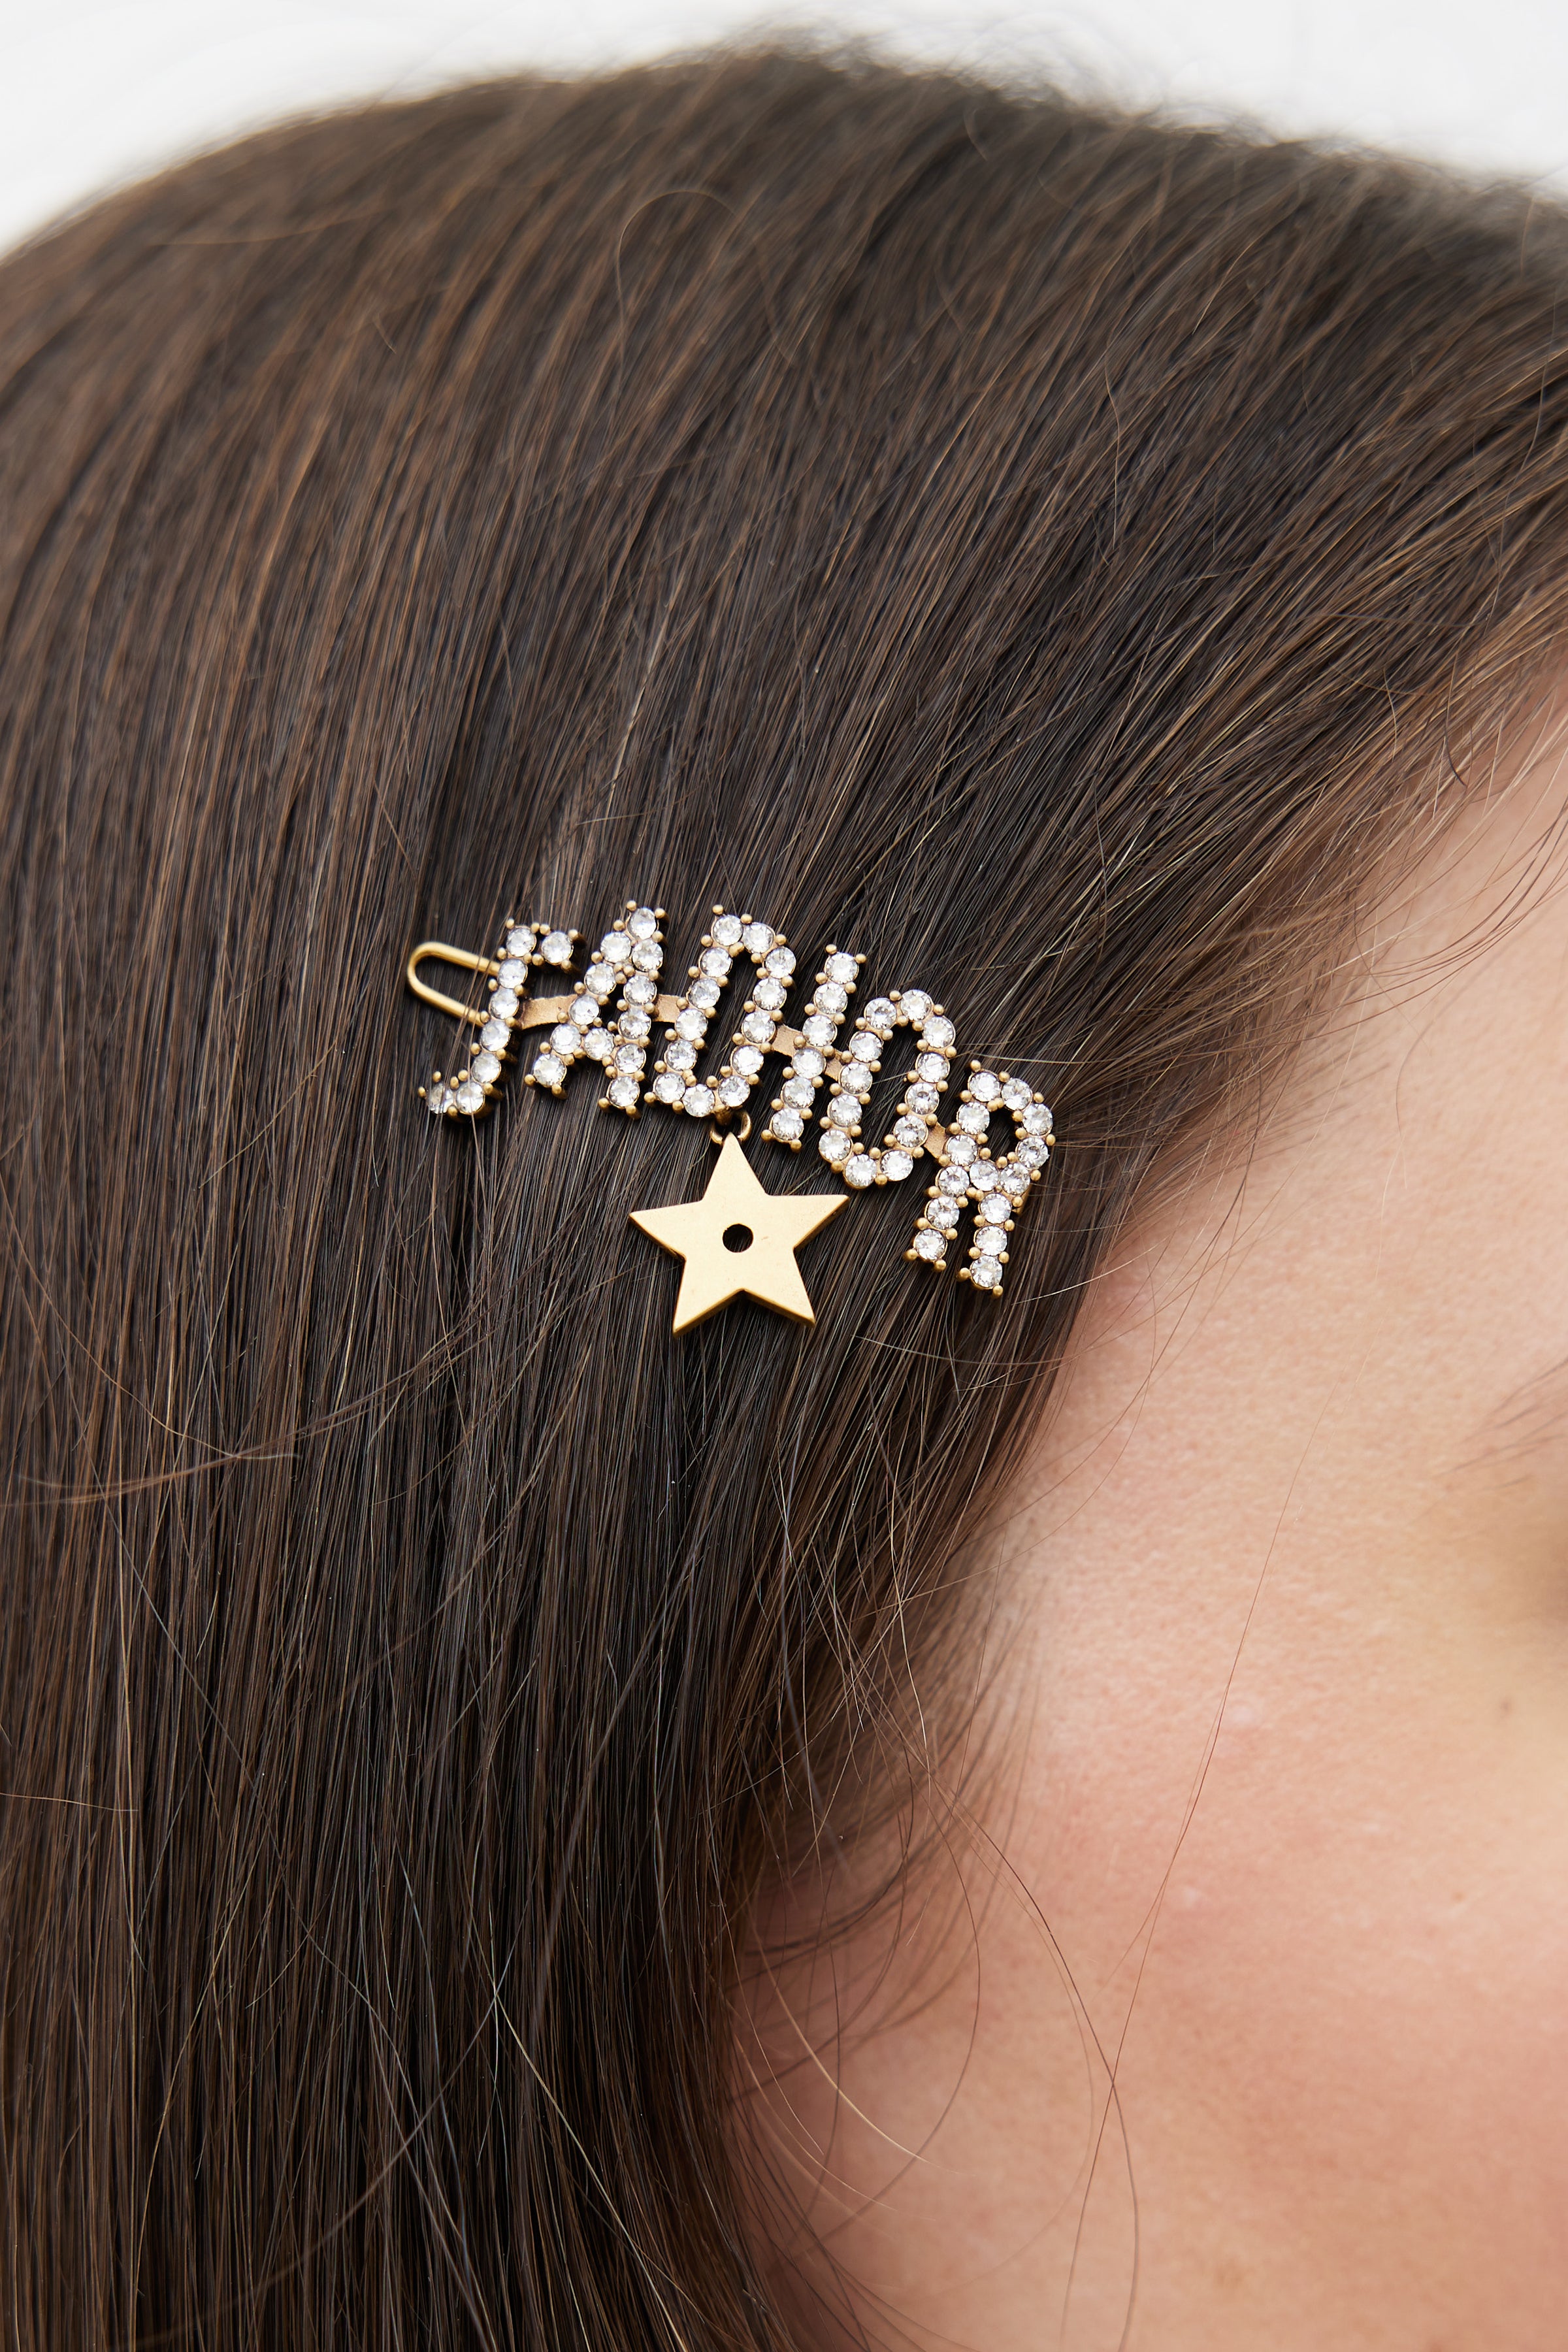 Christian Dior Logo Hair Pin - Gold Hair Accessories, Accessories